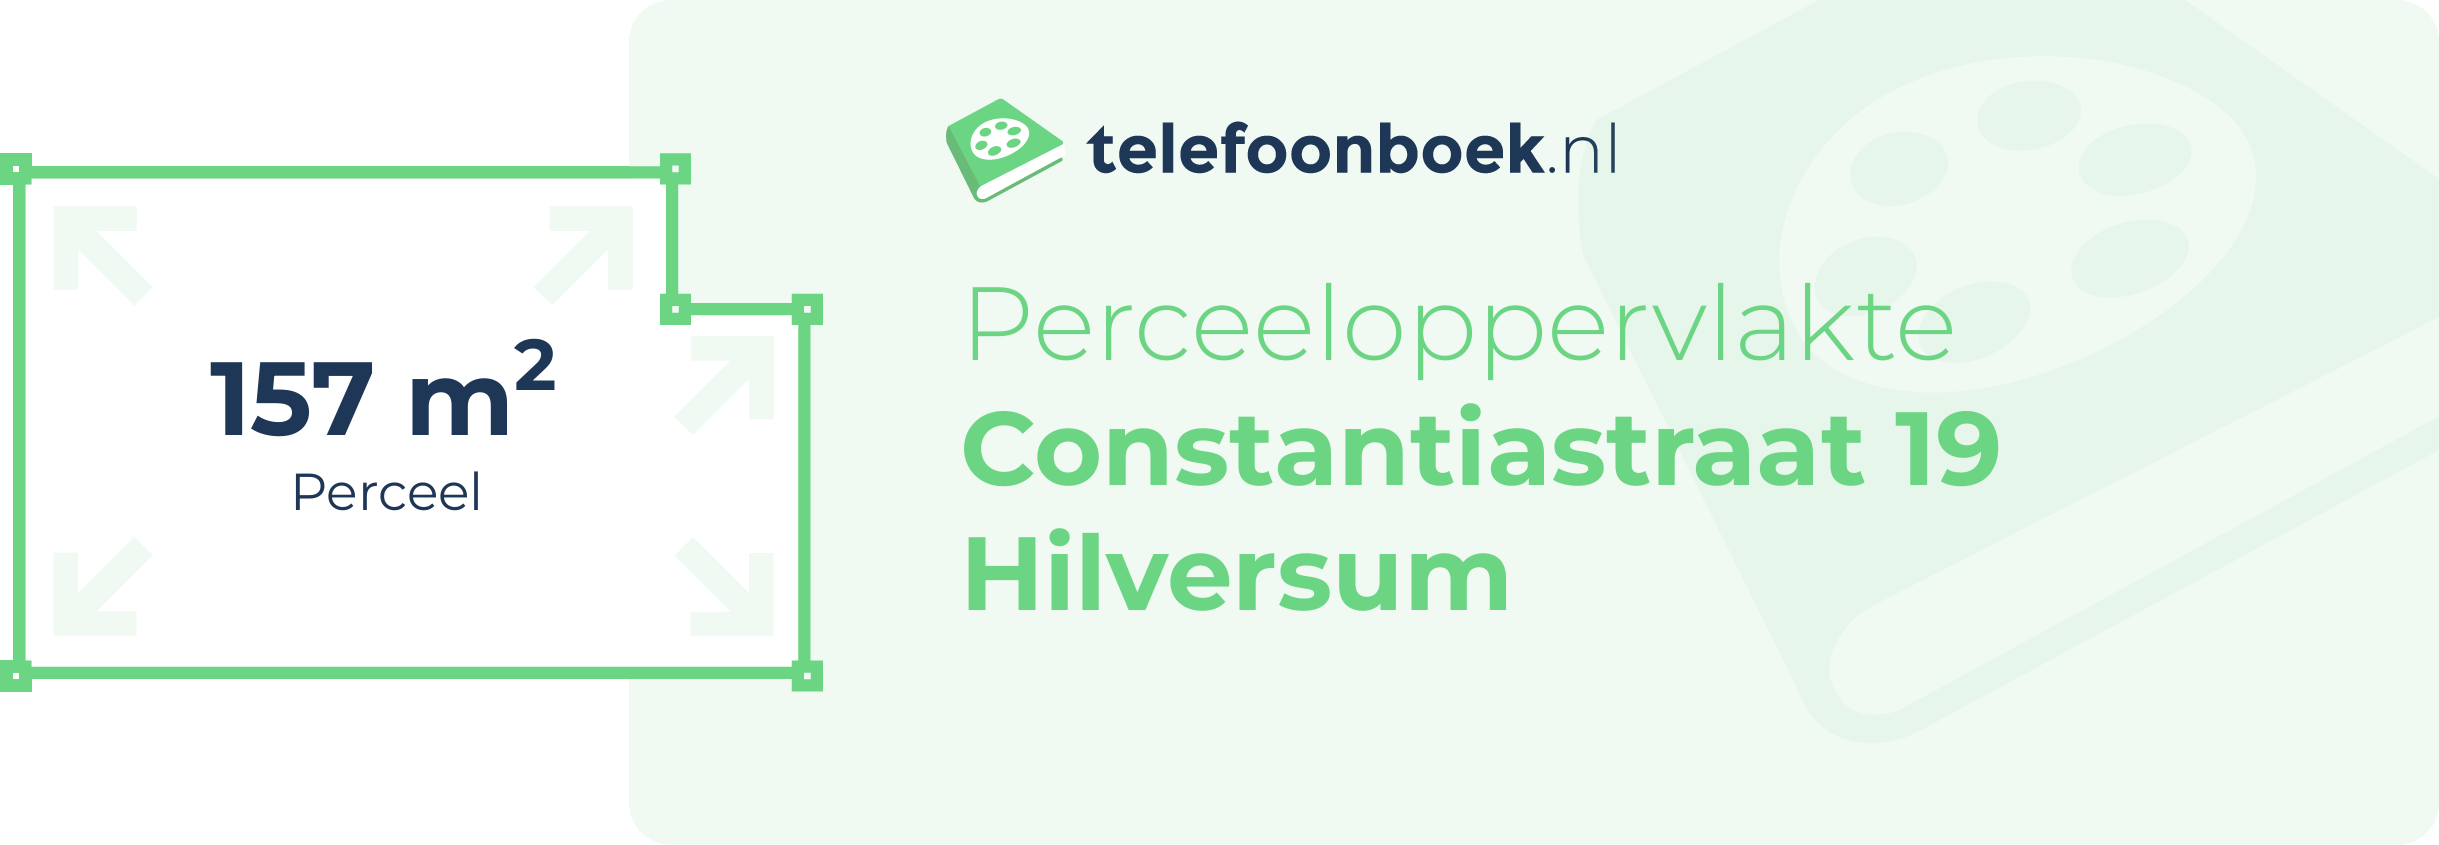 Perceeloppervlakte Constantiastraat 19 Hilversum